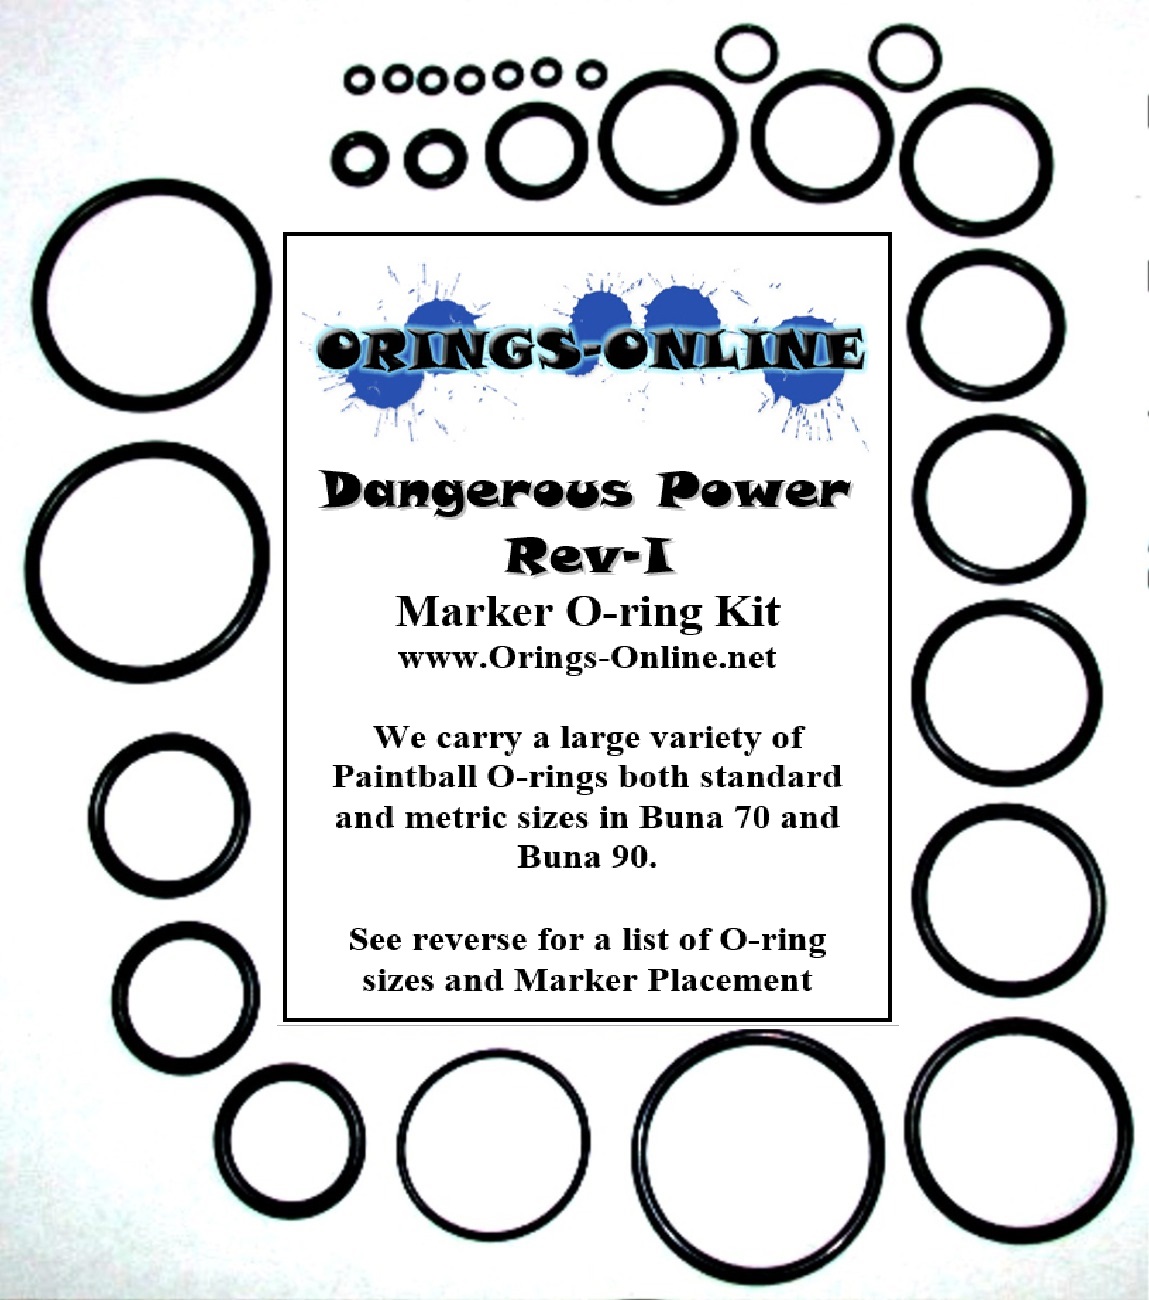 Dangerous Power Rev-i 2012 Marker O-ring Kit